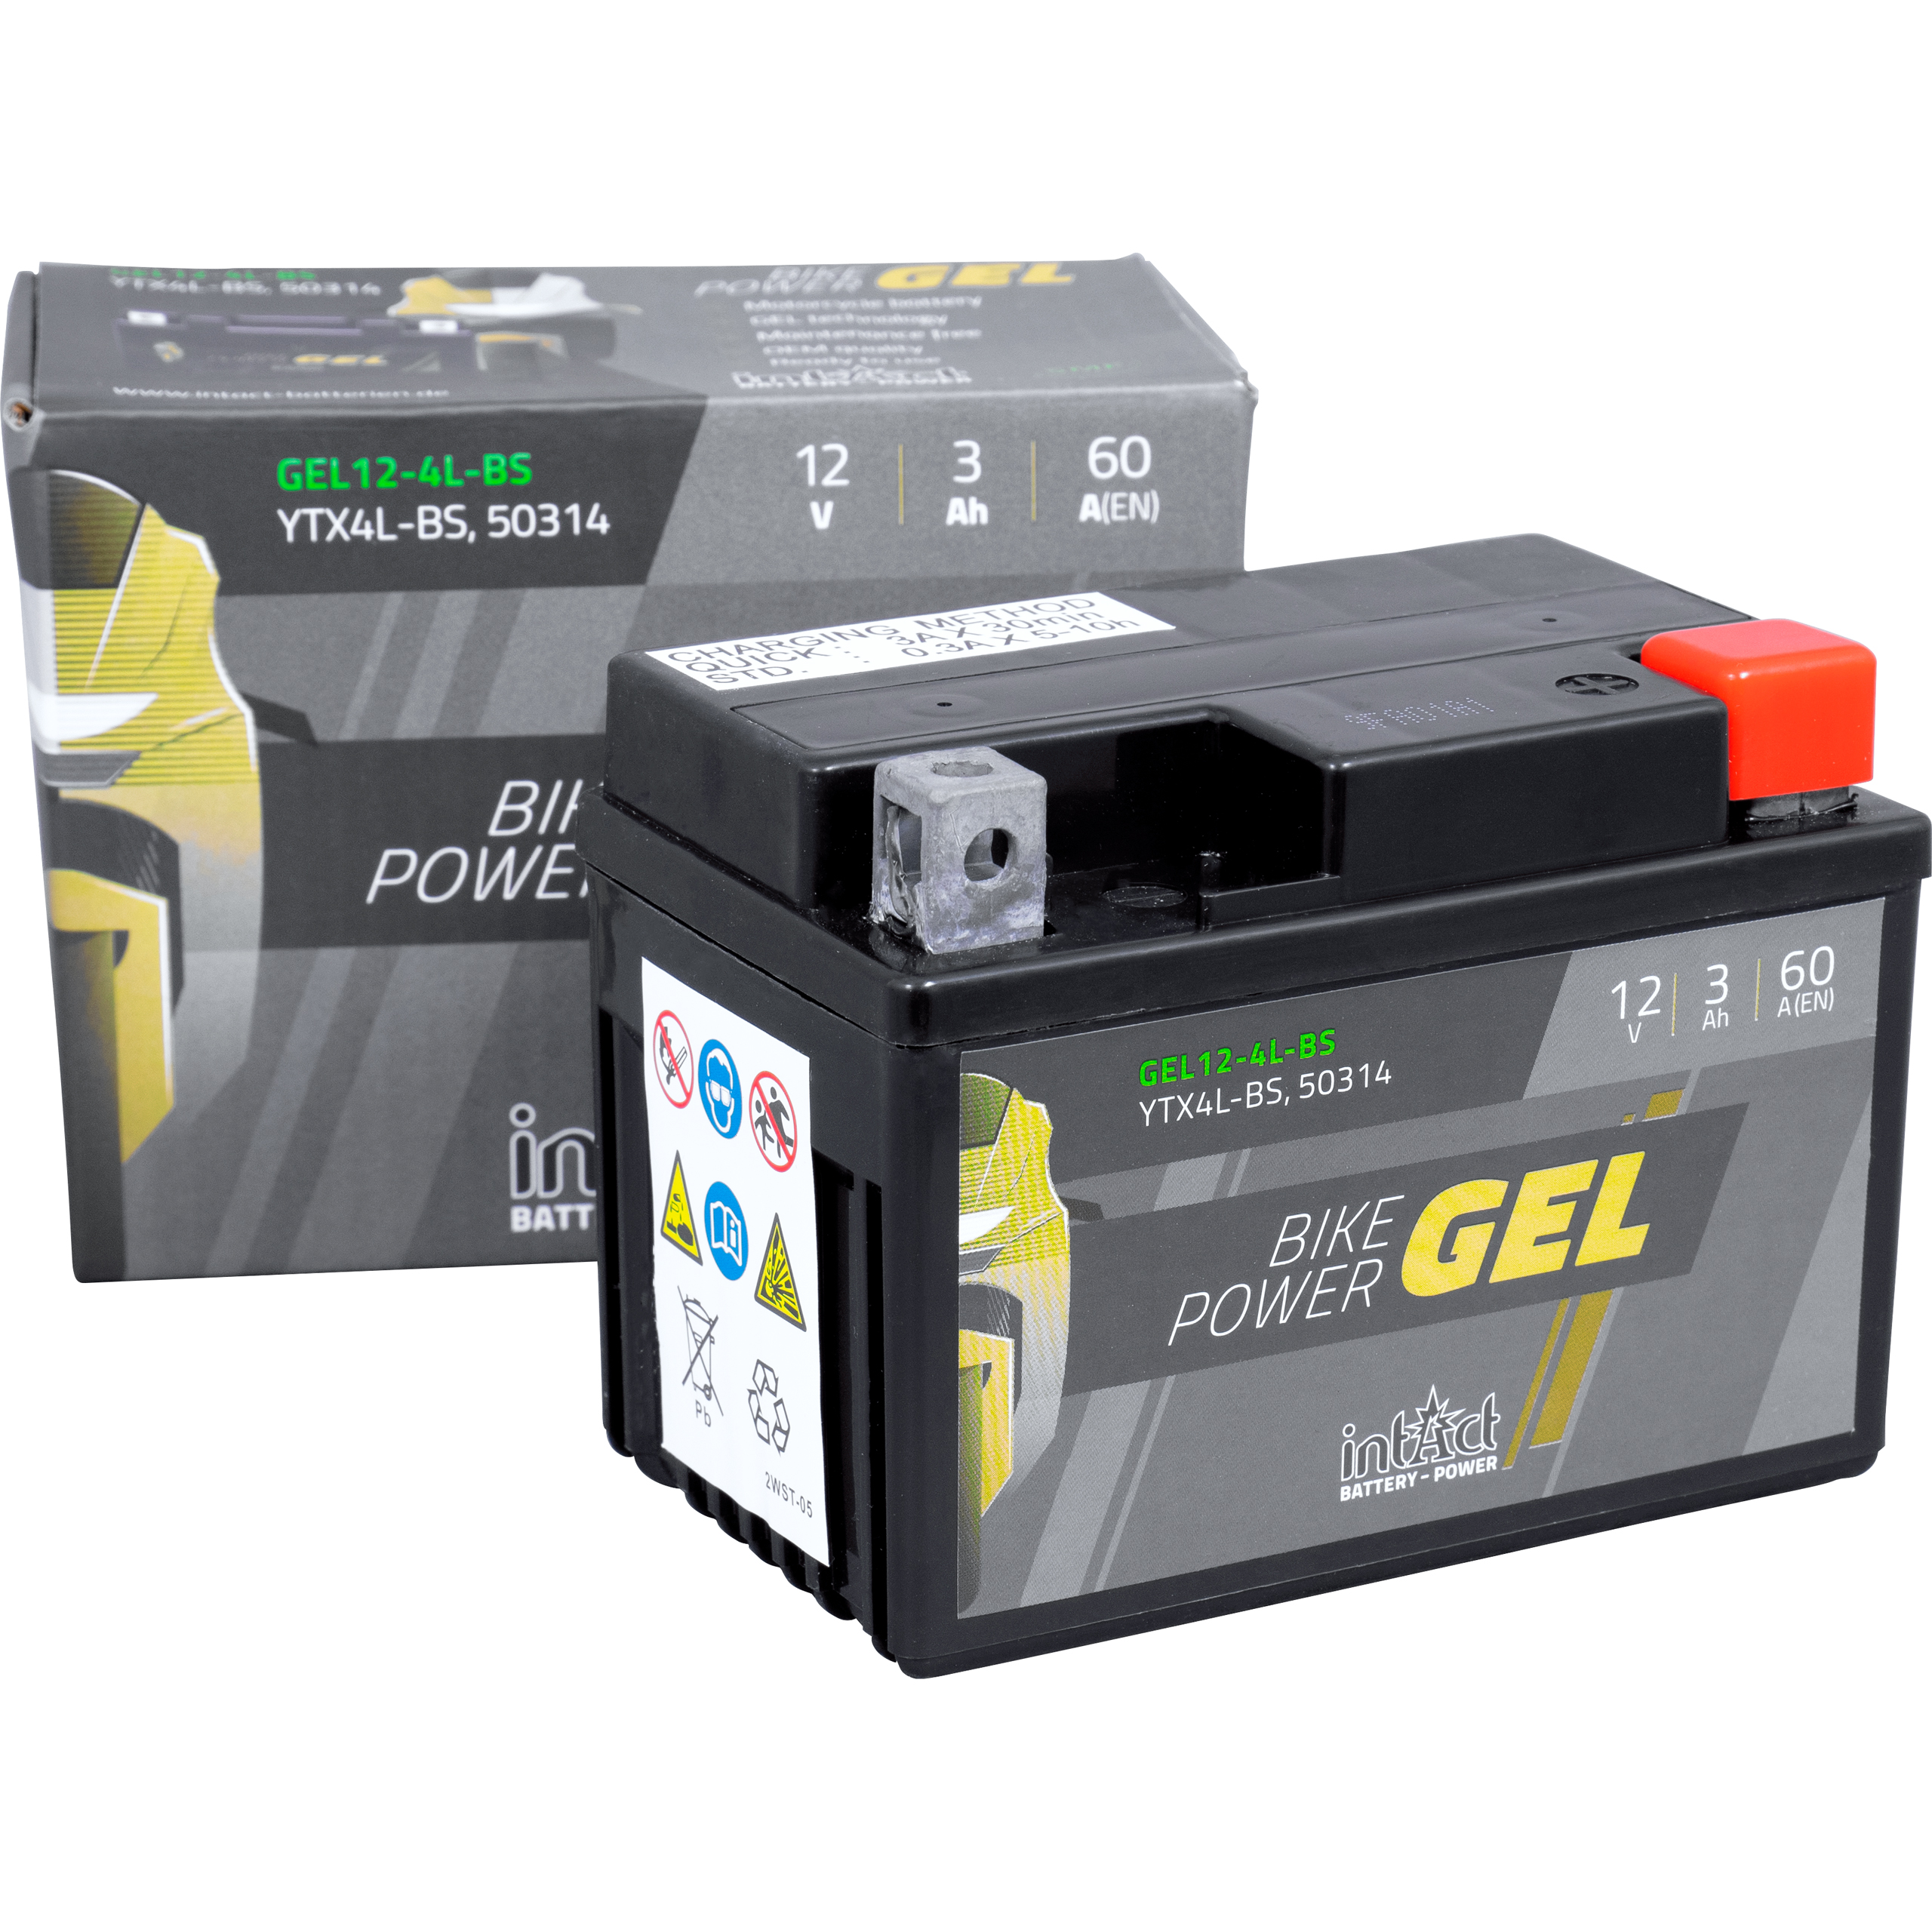 MotorGuide Batterie-Schnellklemmen, Paar (1xrot, 1xblau), universell für  alle Elektromotoren geeignet